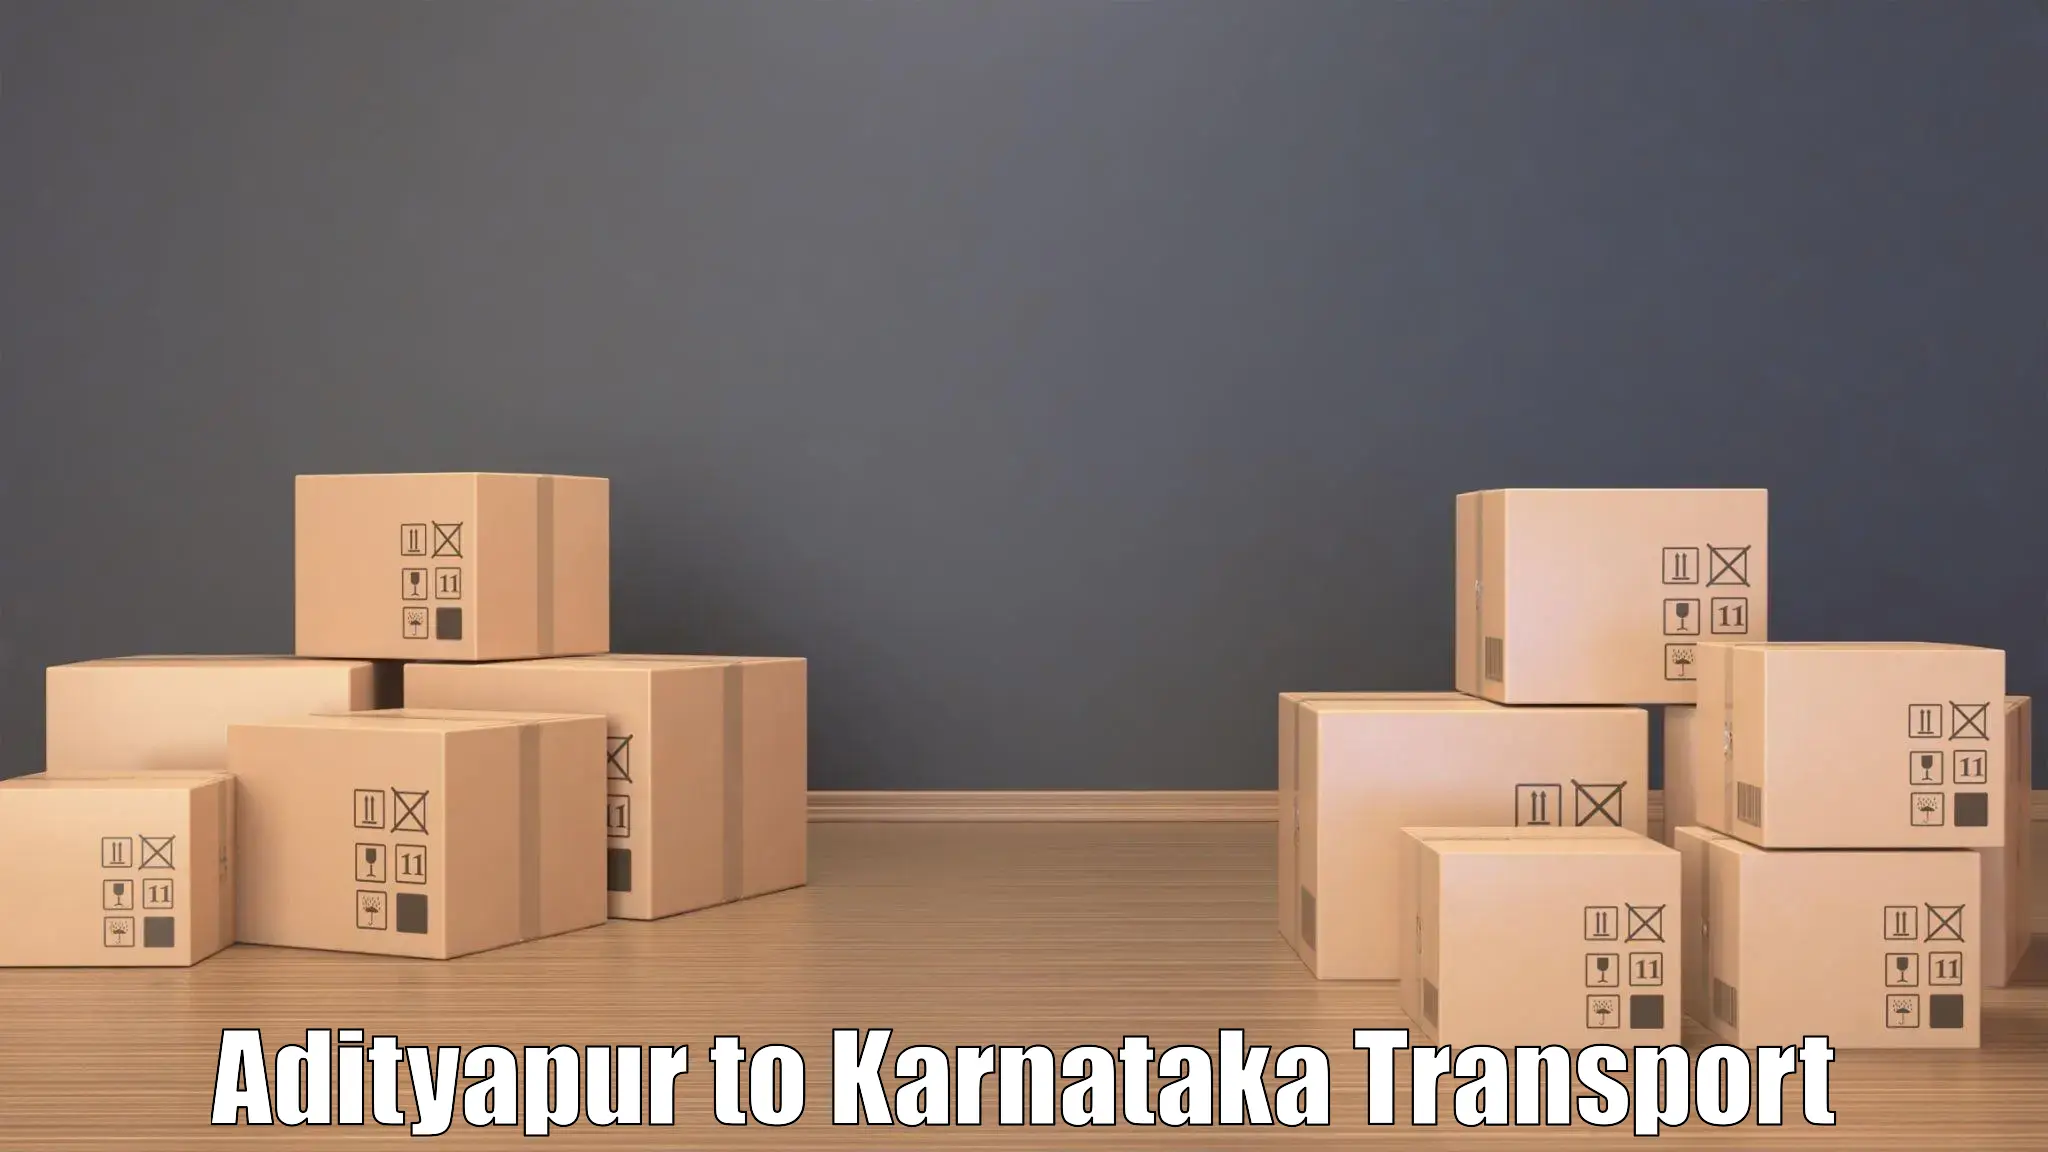 Transport bike from one state to another Adityapur to Kanakapura